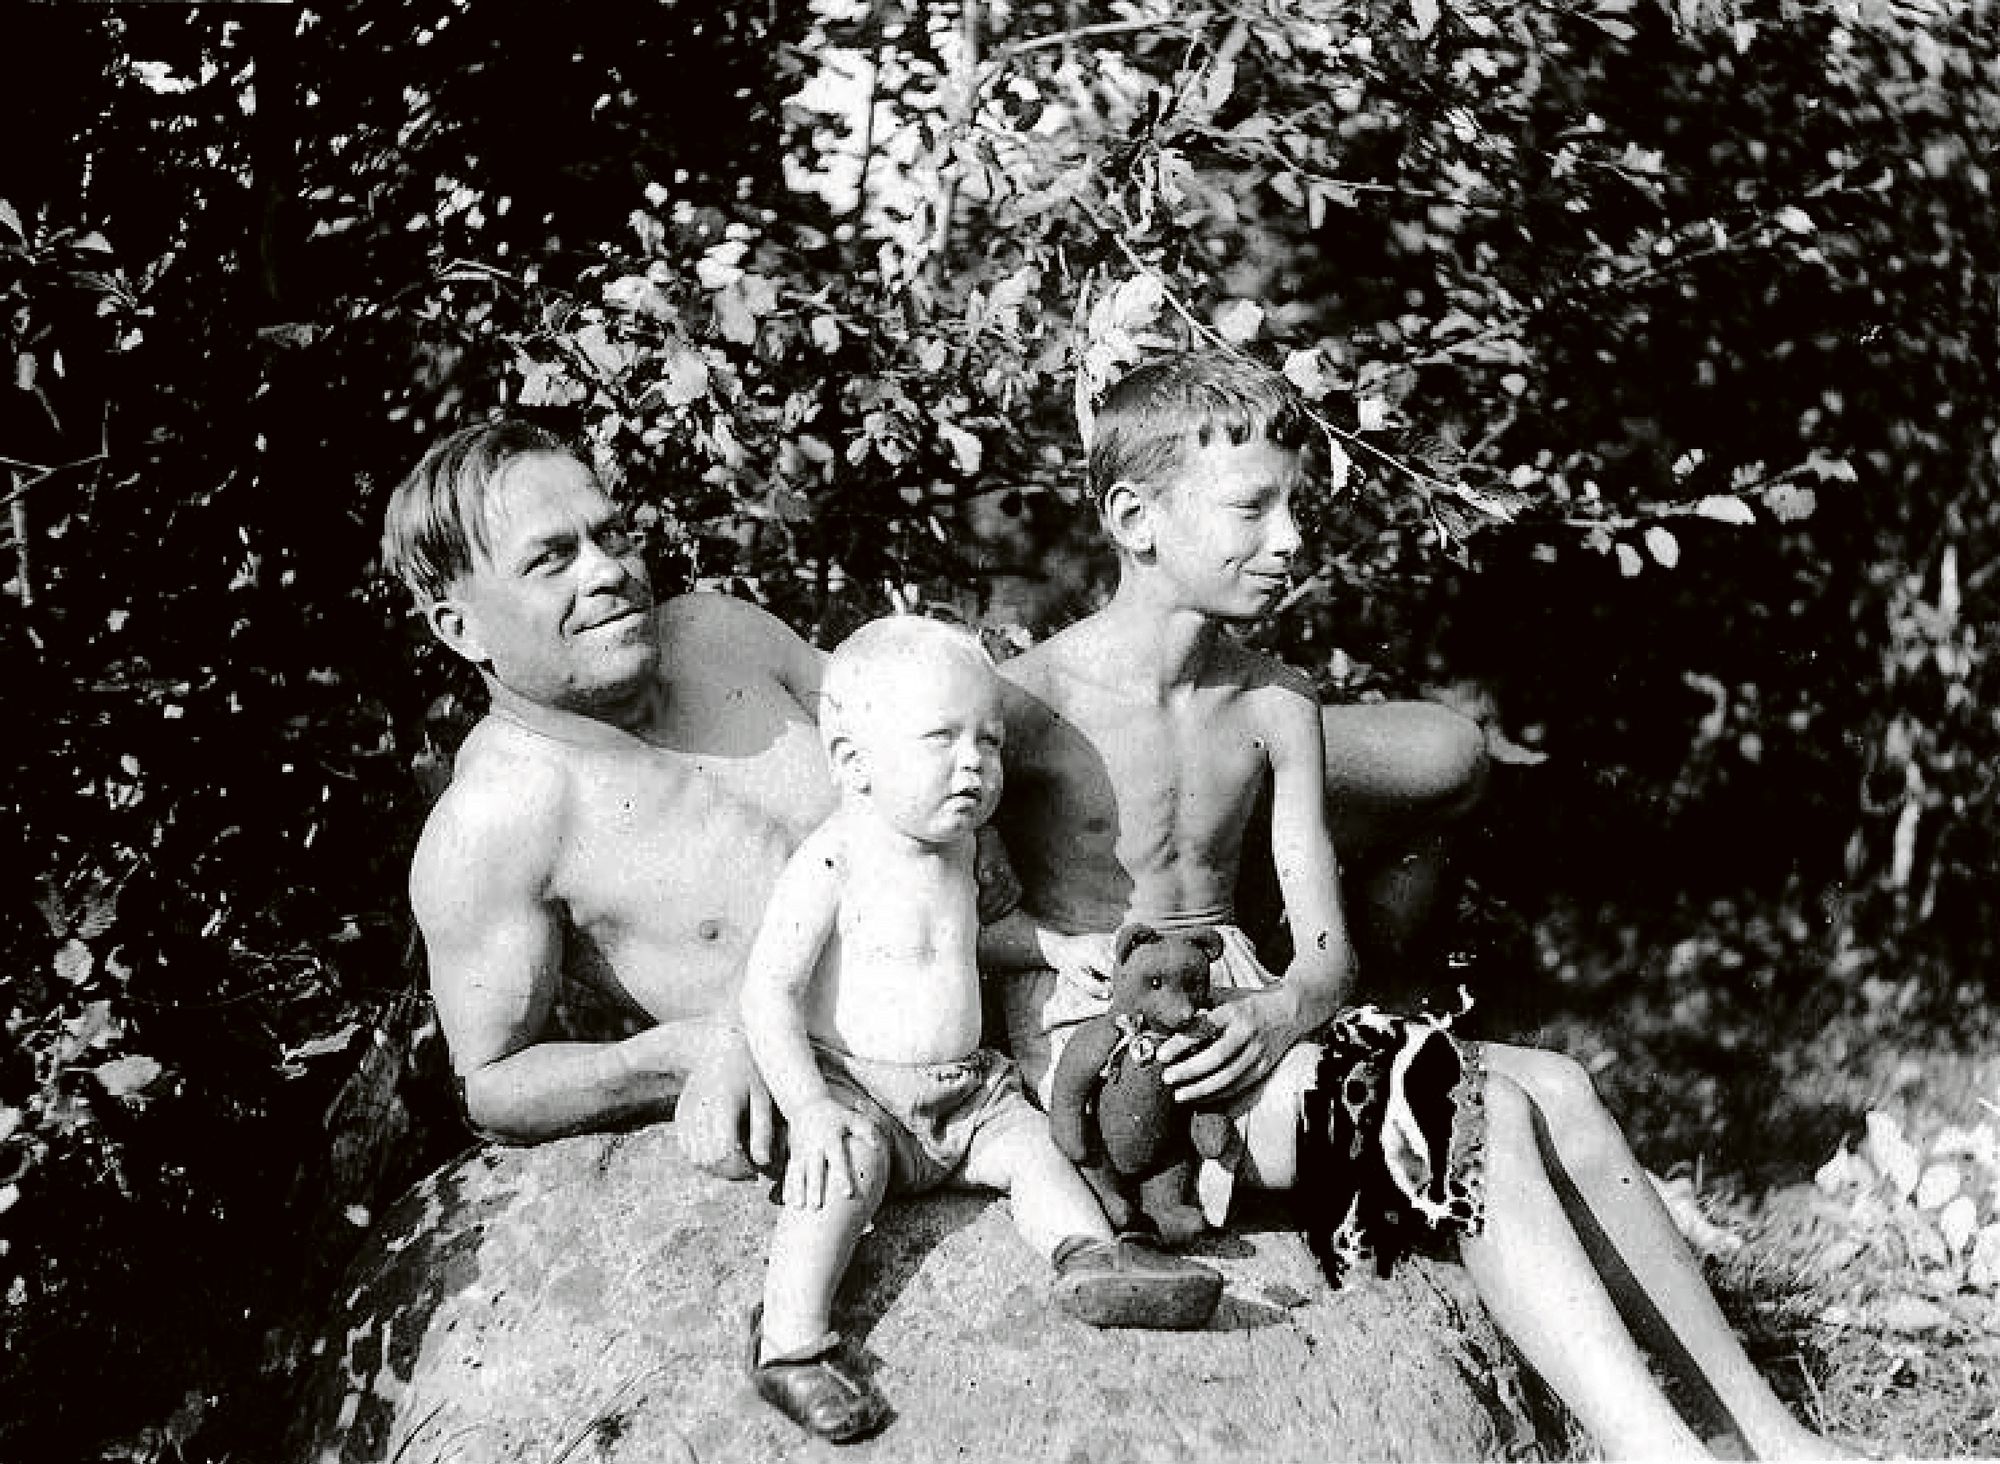 Emil Vaateri poikiensa Alfredin ja Levin kanssa. Lev syntyi Emilin ensimmäisestä avioliitosta 1927. Vuonna 1937 syntyneen Alfredin äiti oli toinen vaimo Margit. © Kain kotialbumi